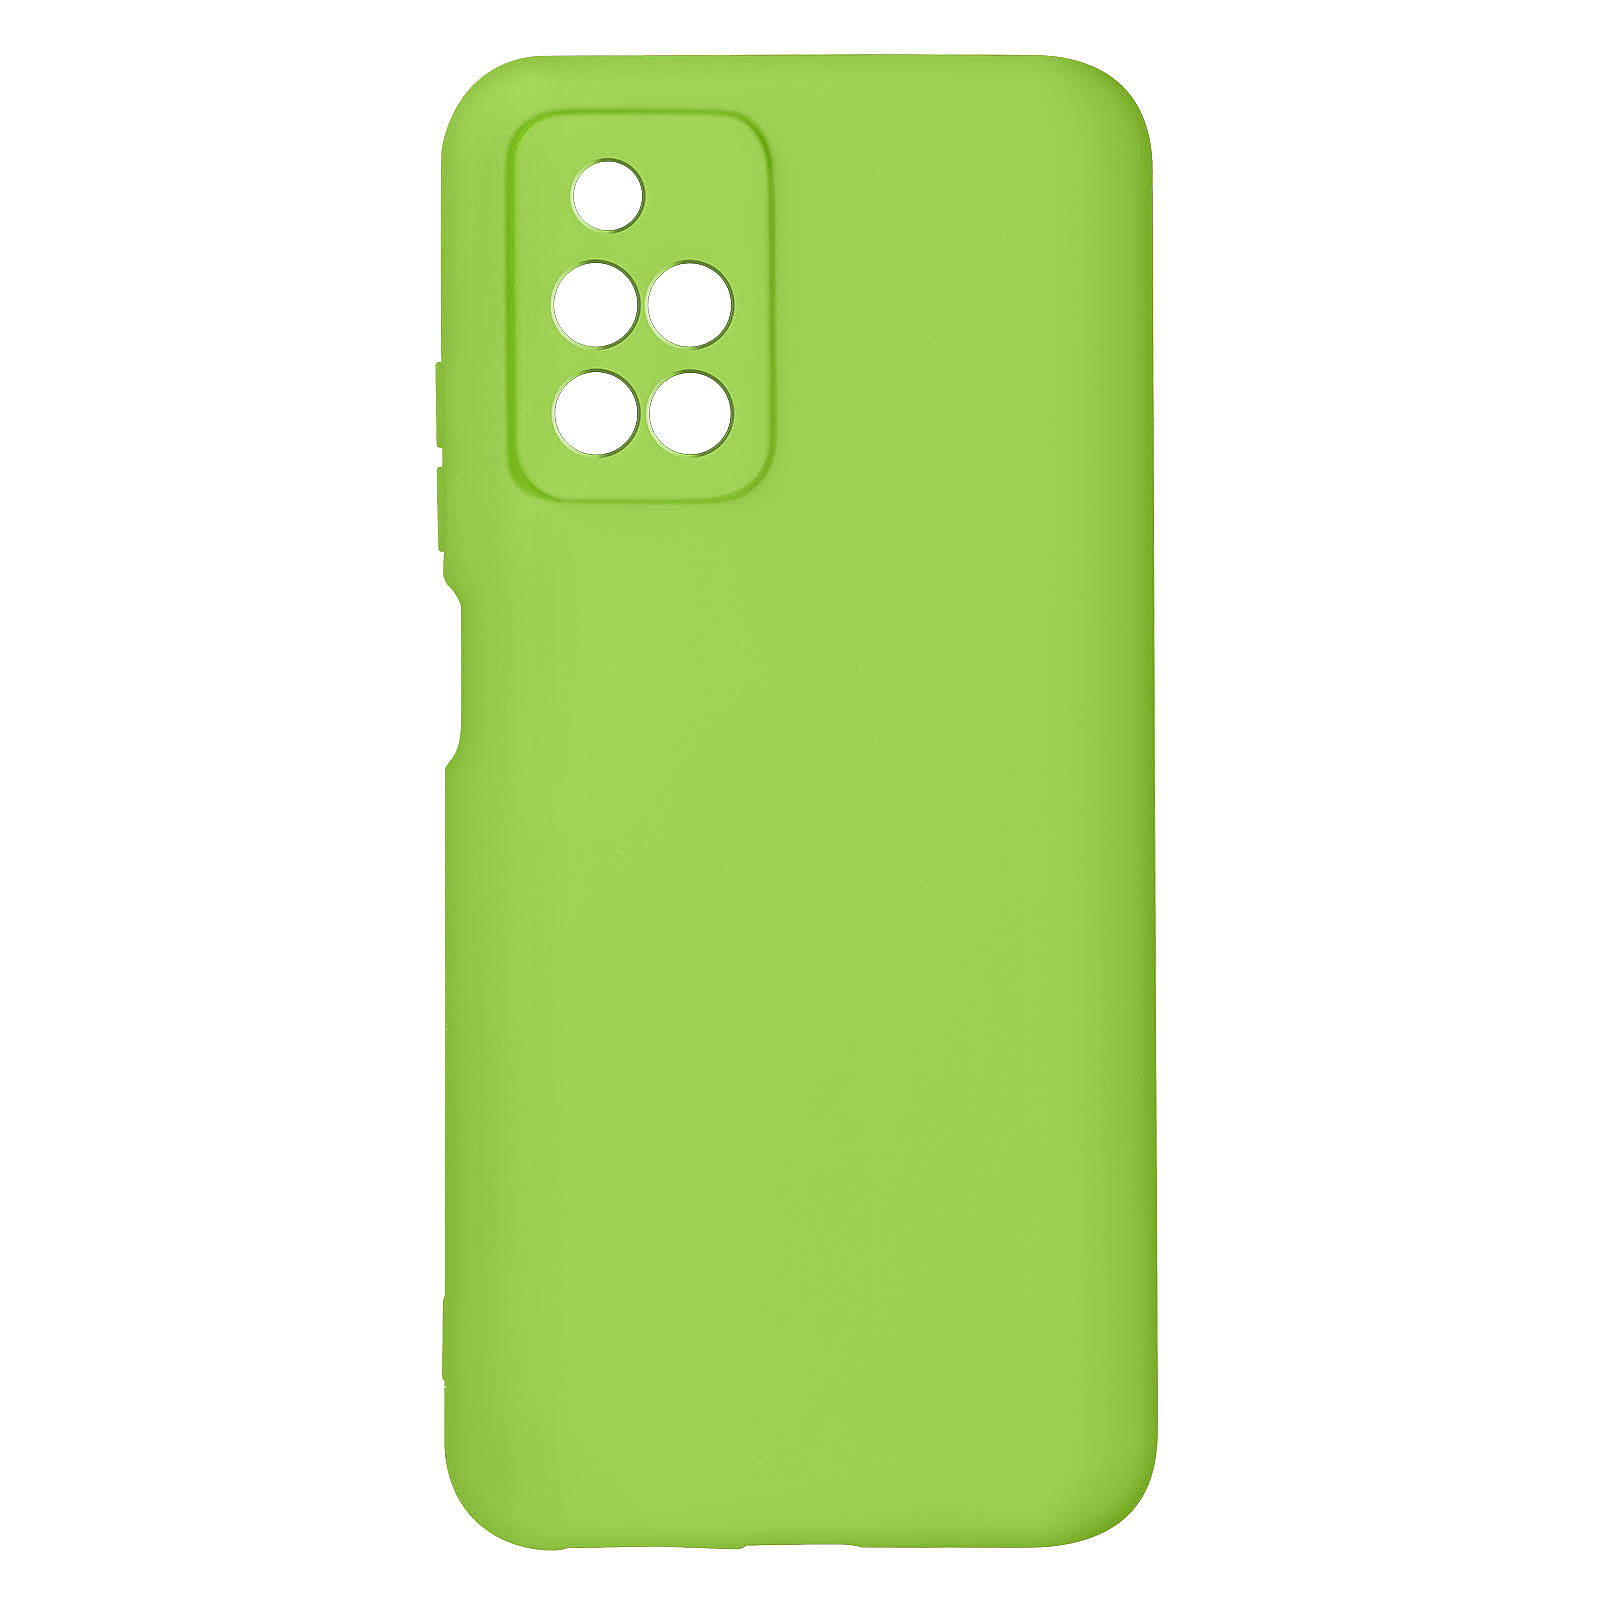 Avizar Coque pour Xiaomi Redmi 10 Silicone Semi-rigide Finition Soft-touch Fine Vert - Coque telephone Avizar